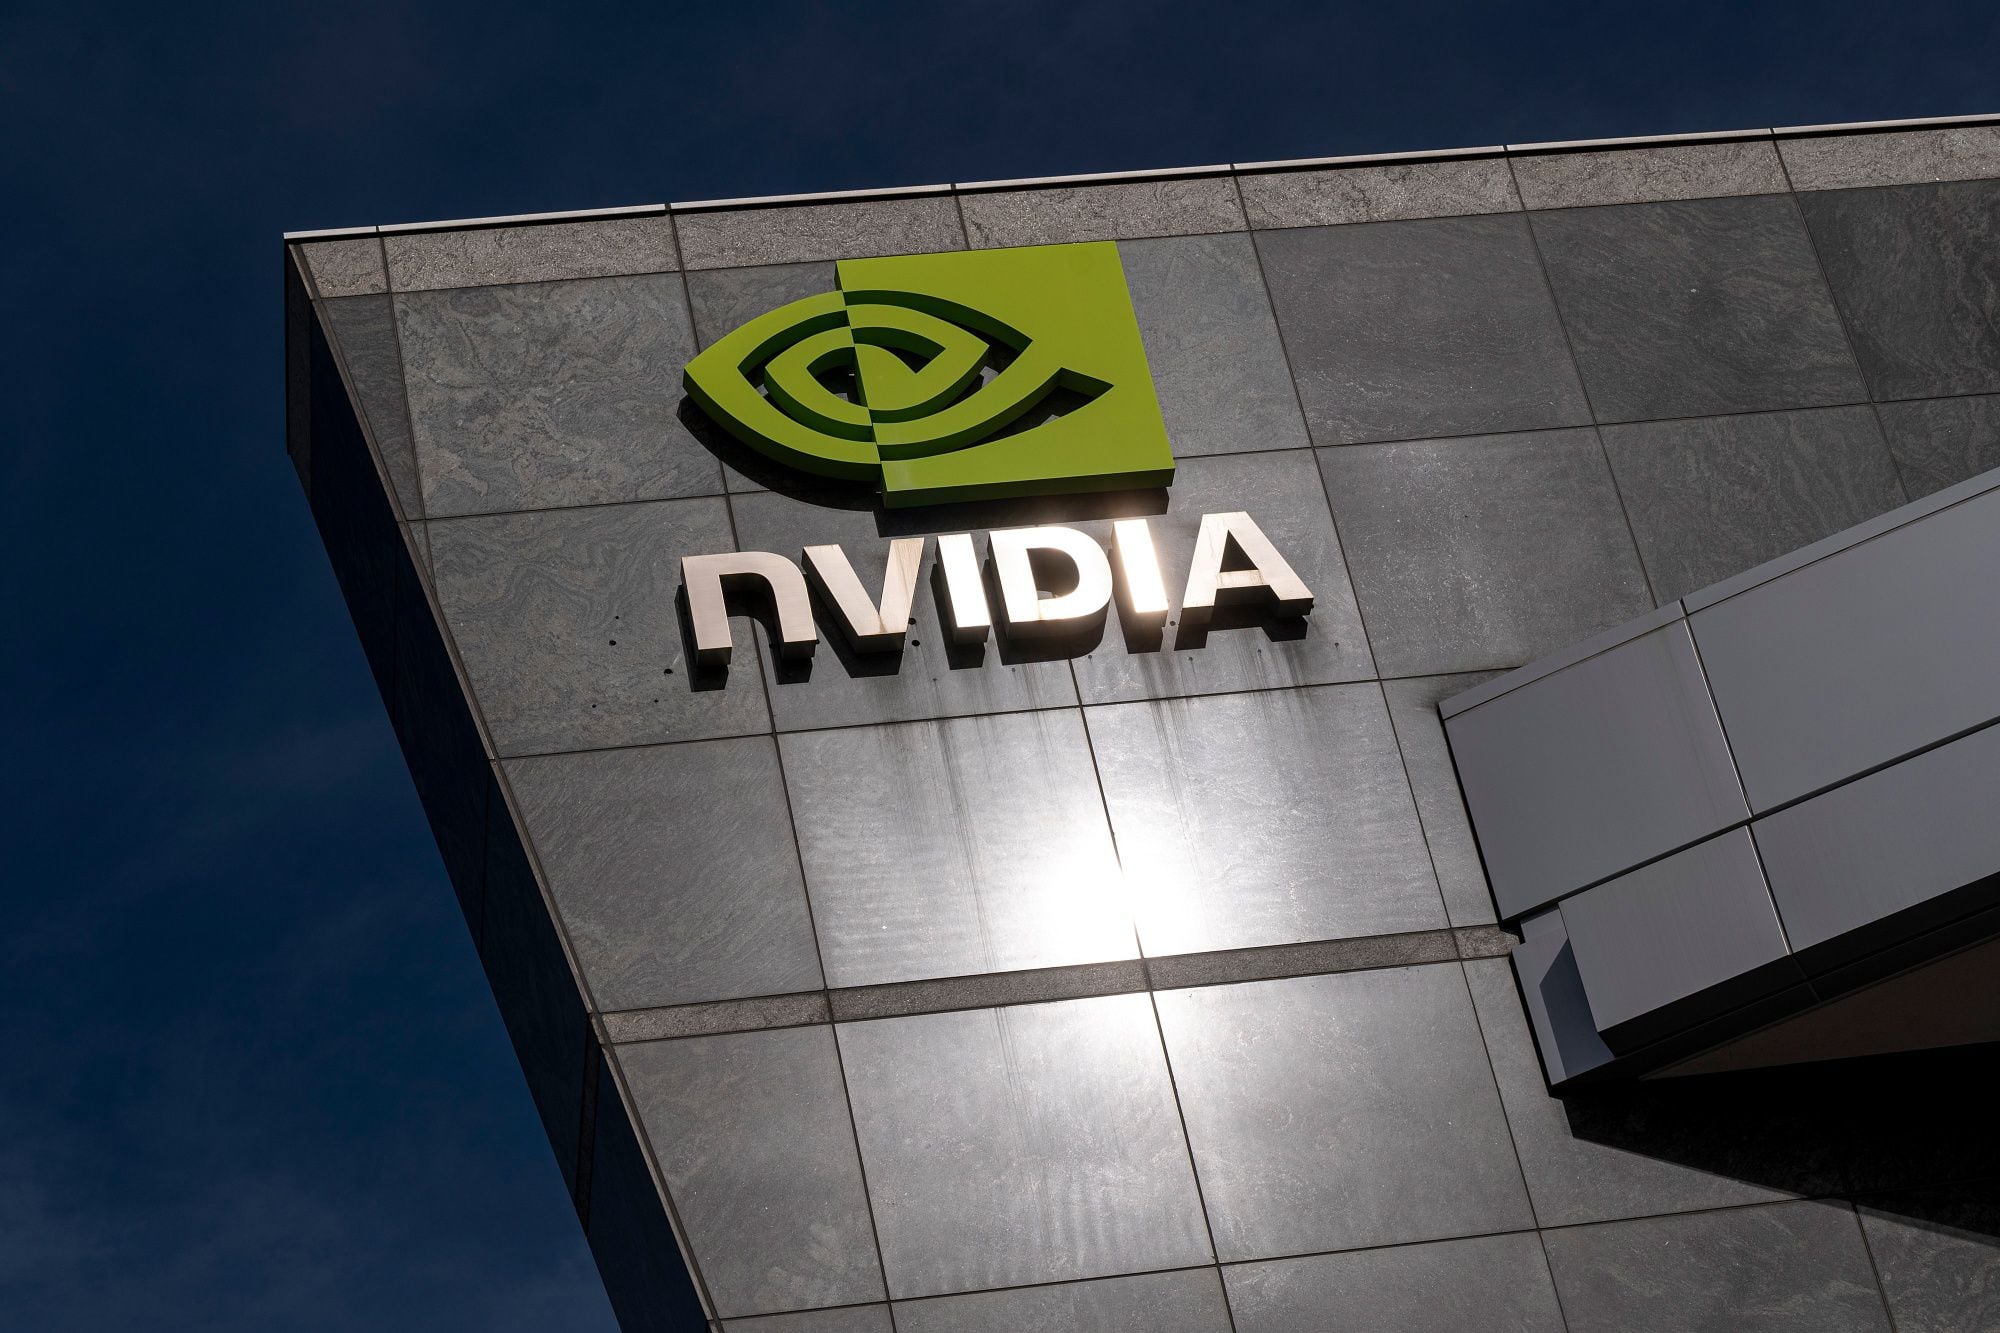 Nvidia se convierte en la empresa más valiosa en bolsa en el mundo